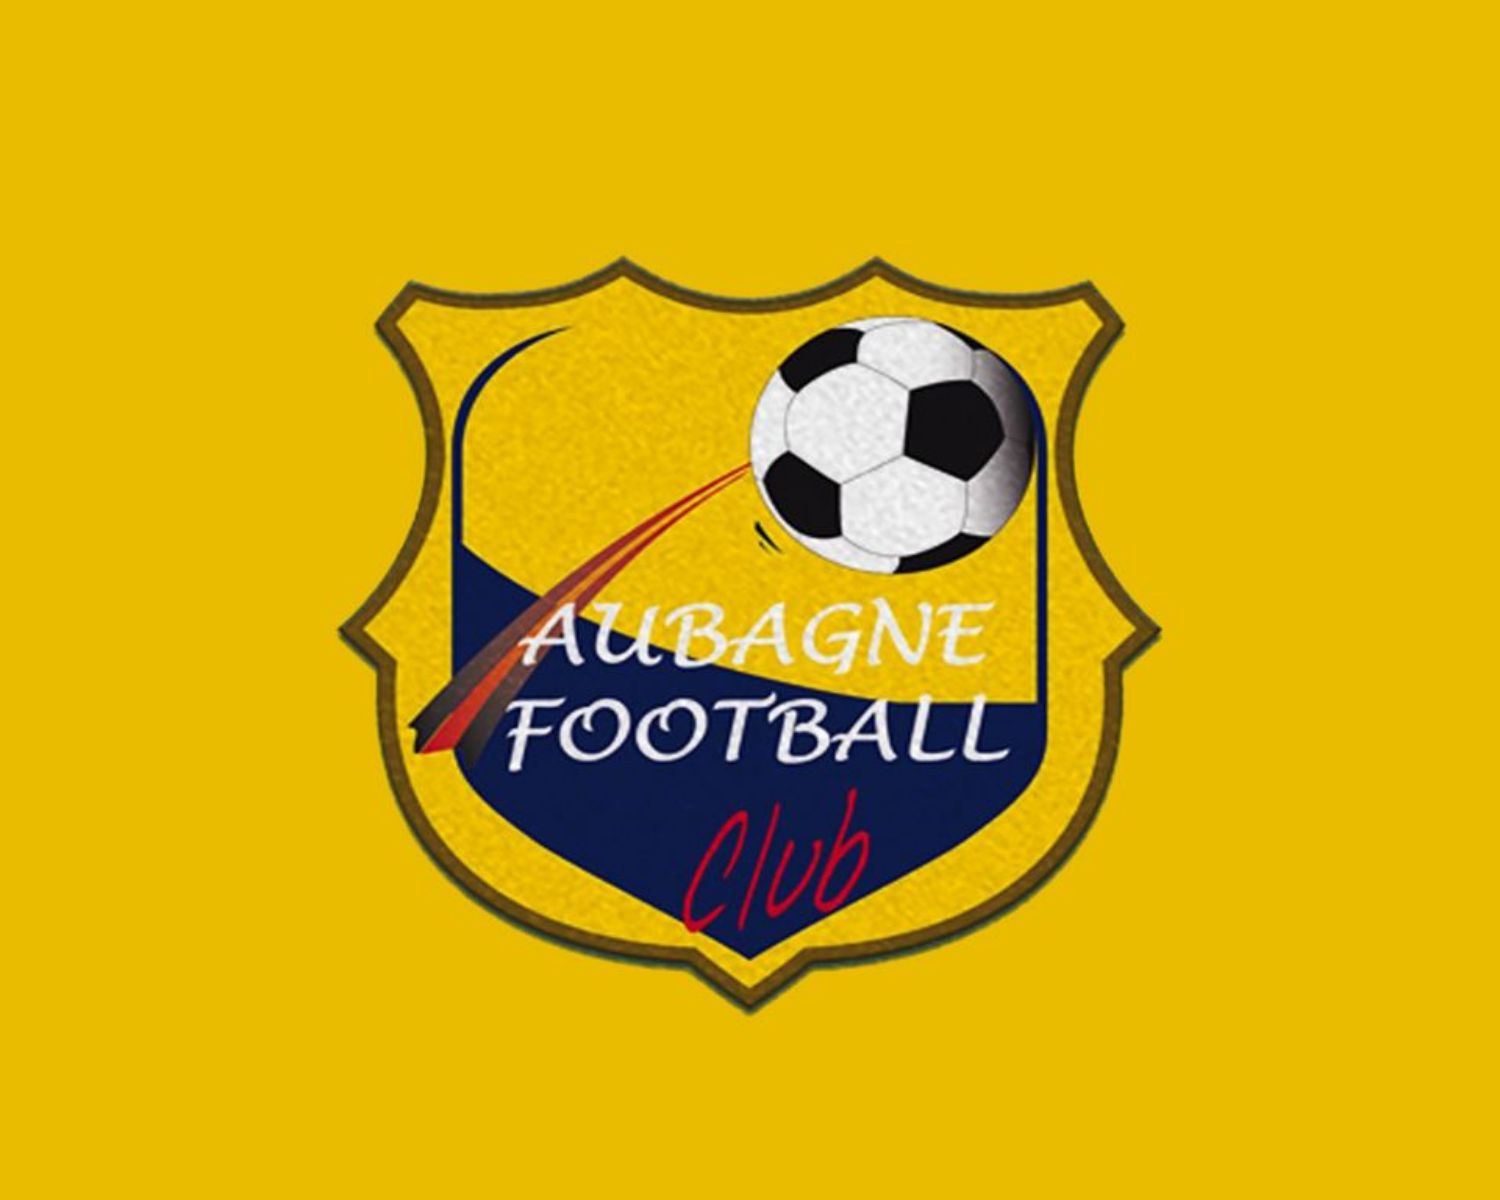 aubagne-fc-22-football-club-facts